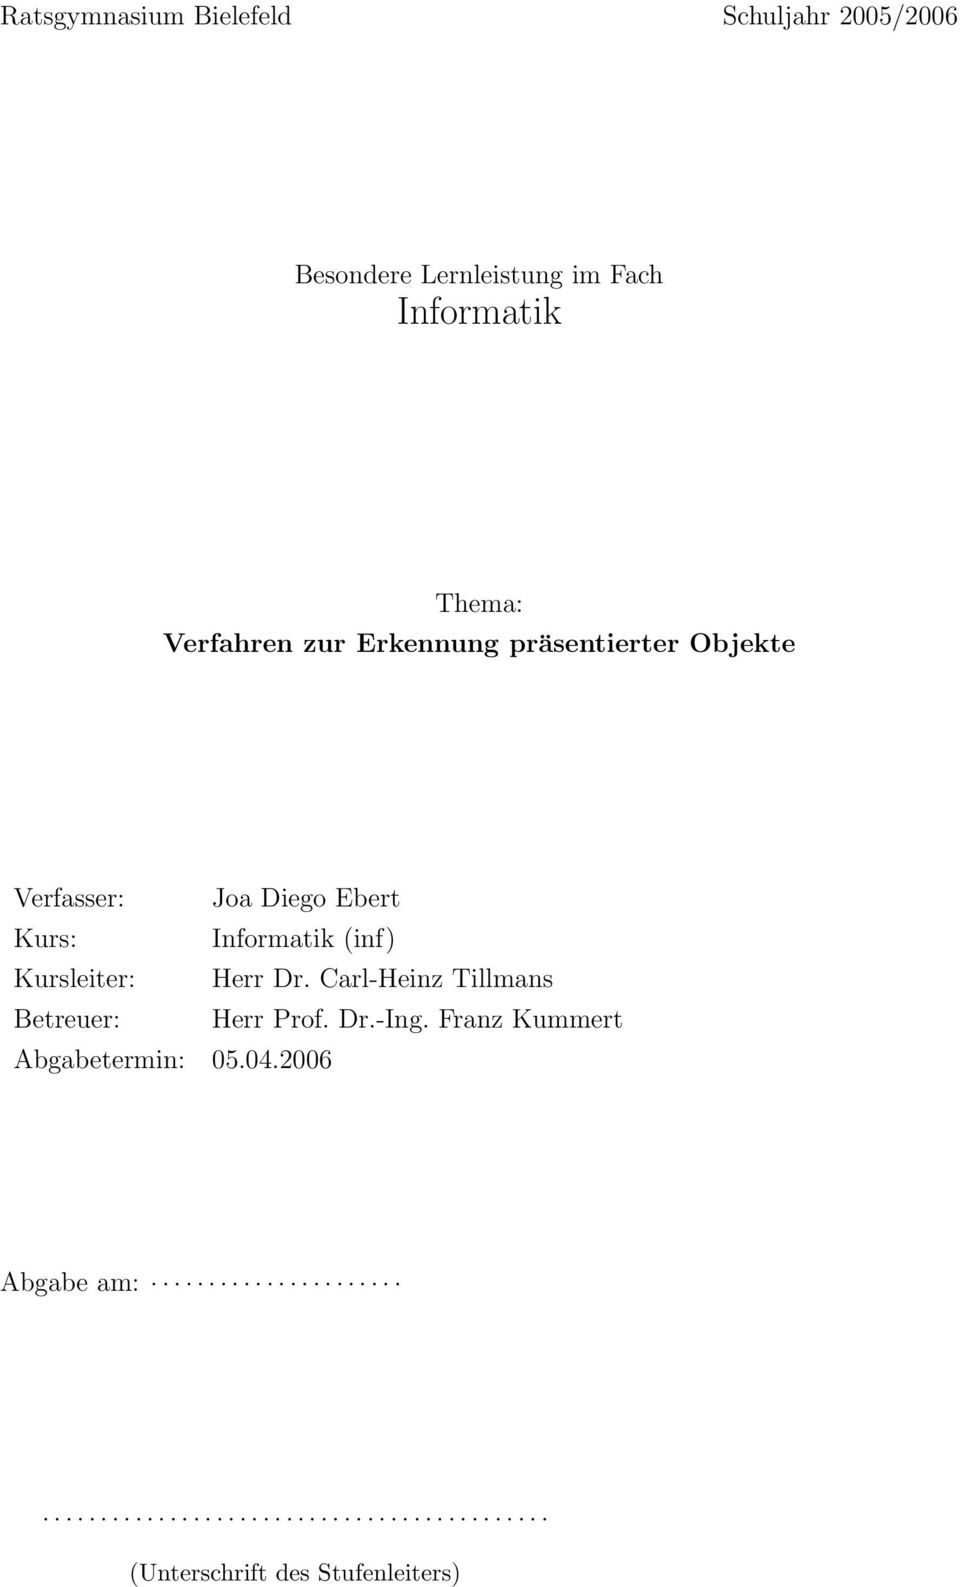 Kursleiter: Herr Dr. Carl-Heinz Tillmans Betreuer: Herr Prof. Dr.-Ing. Franz Kummert Abgabetermin: 05.